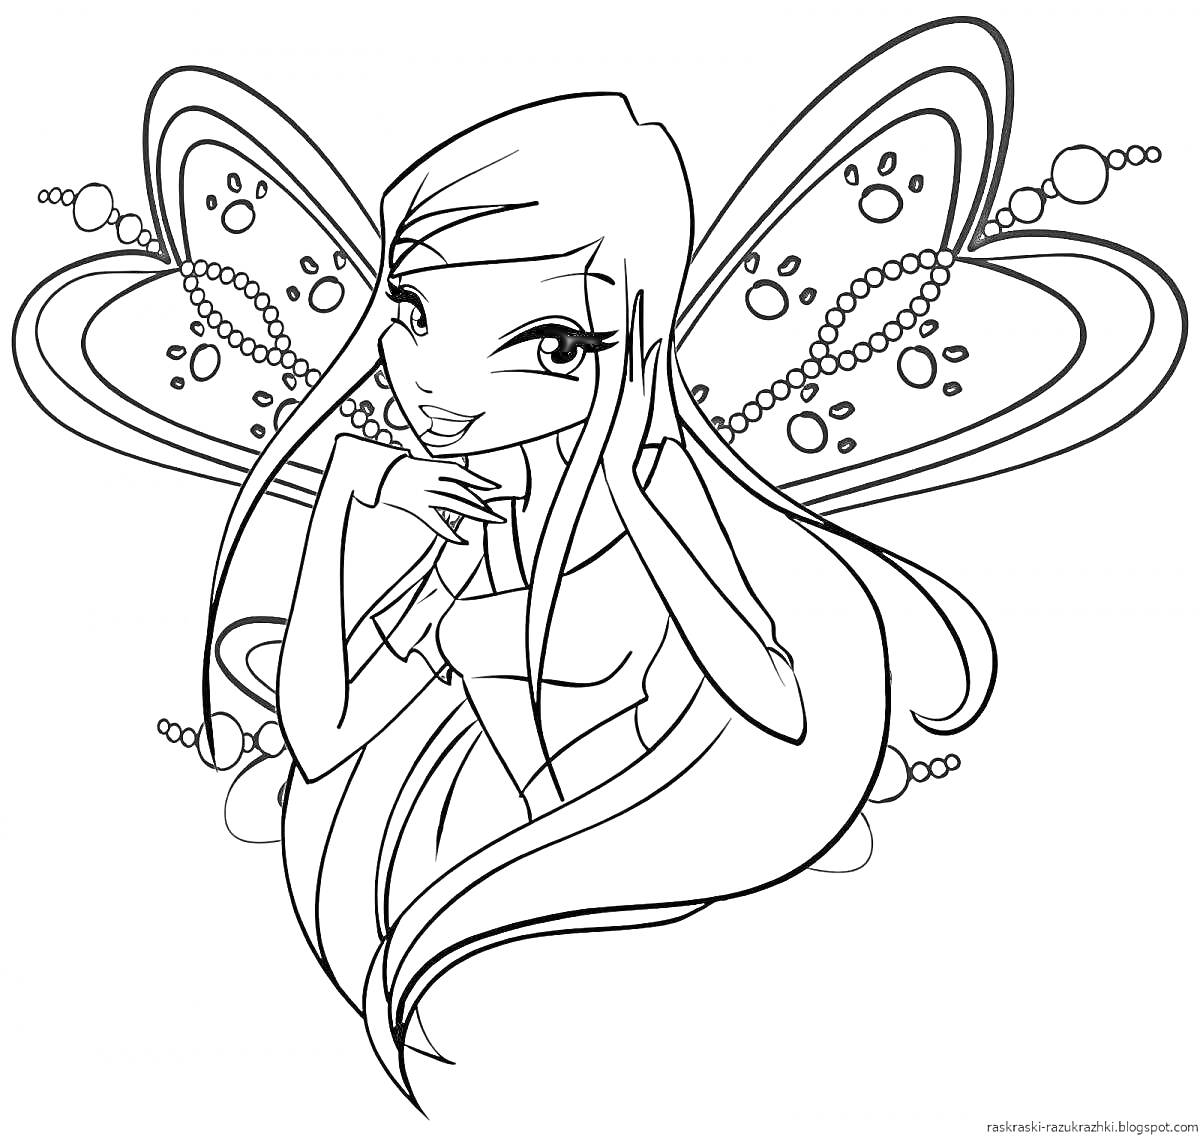 Раскраска Волшебная фея с длинными волосами и крыльями, украшенными узорами и бусинами